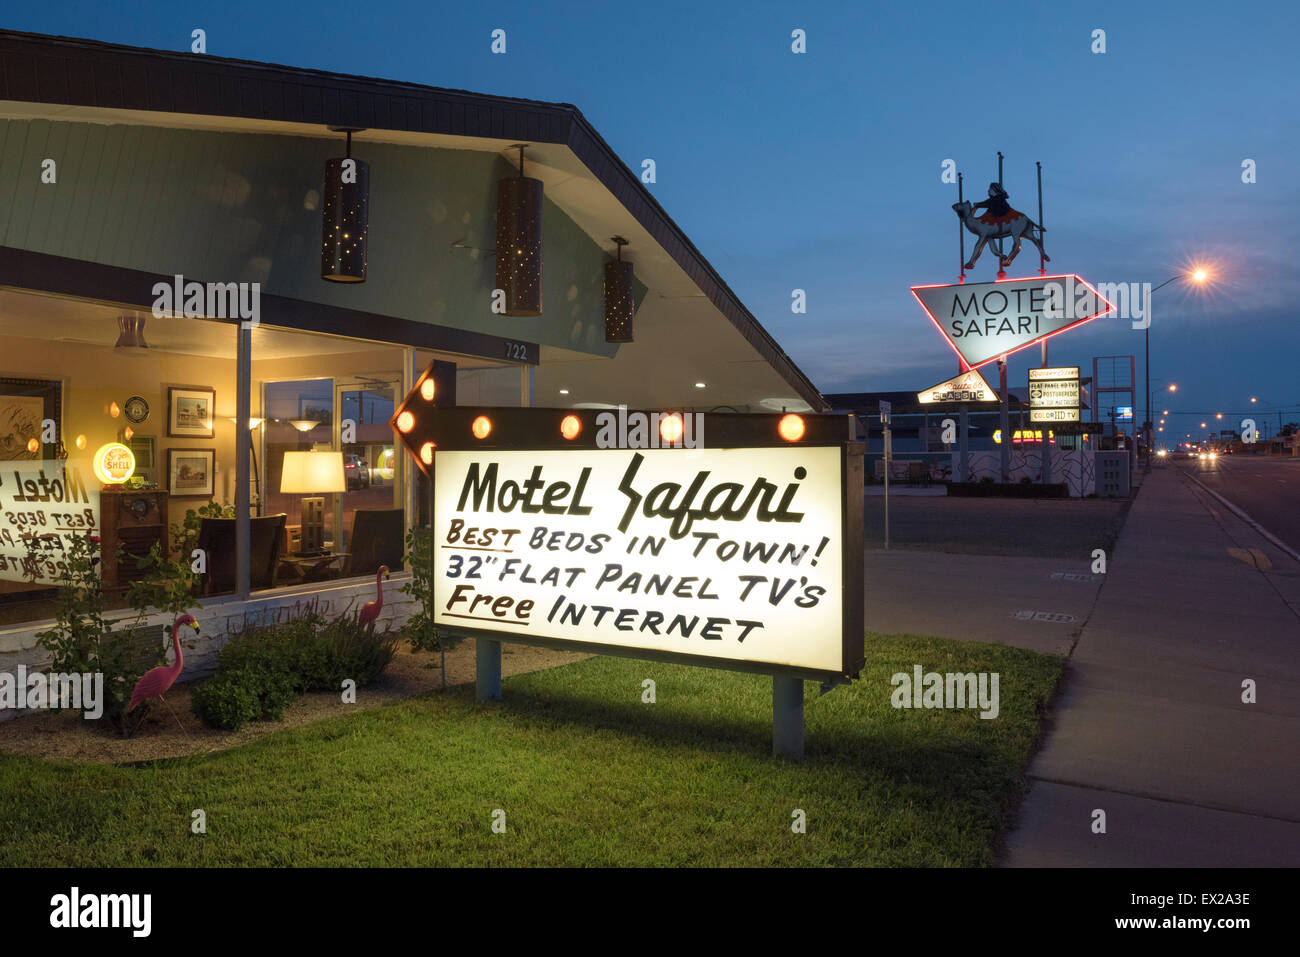 Motel Safari on Route 66 in Tucumcari, New Mexico Stock Photo